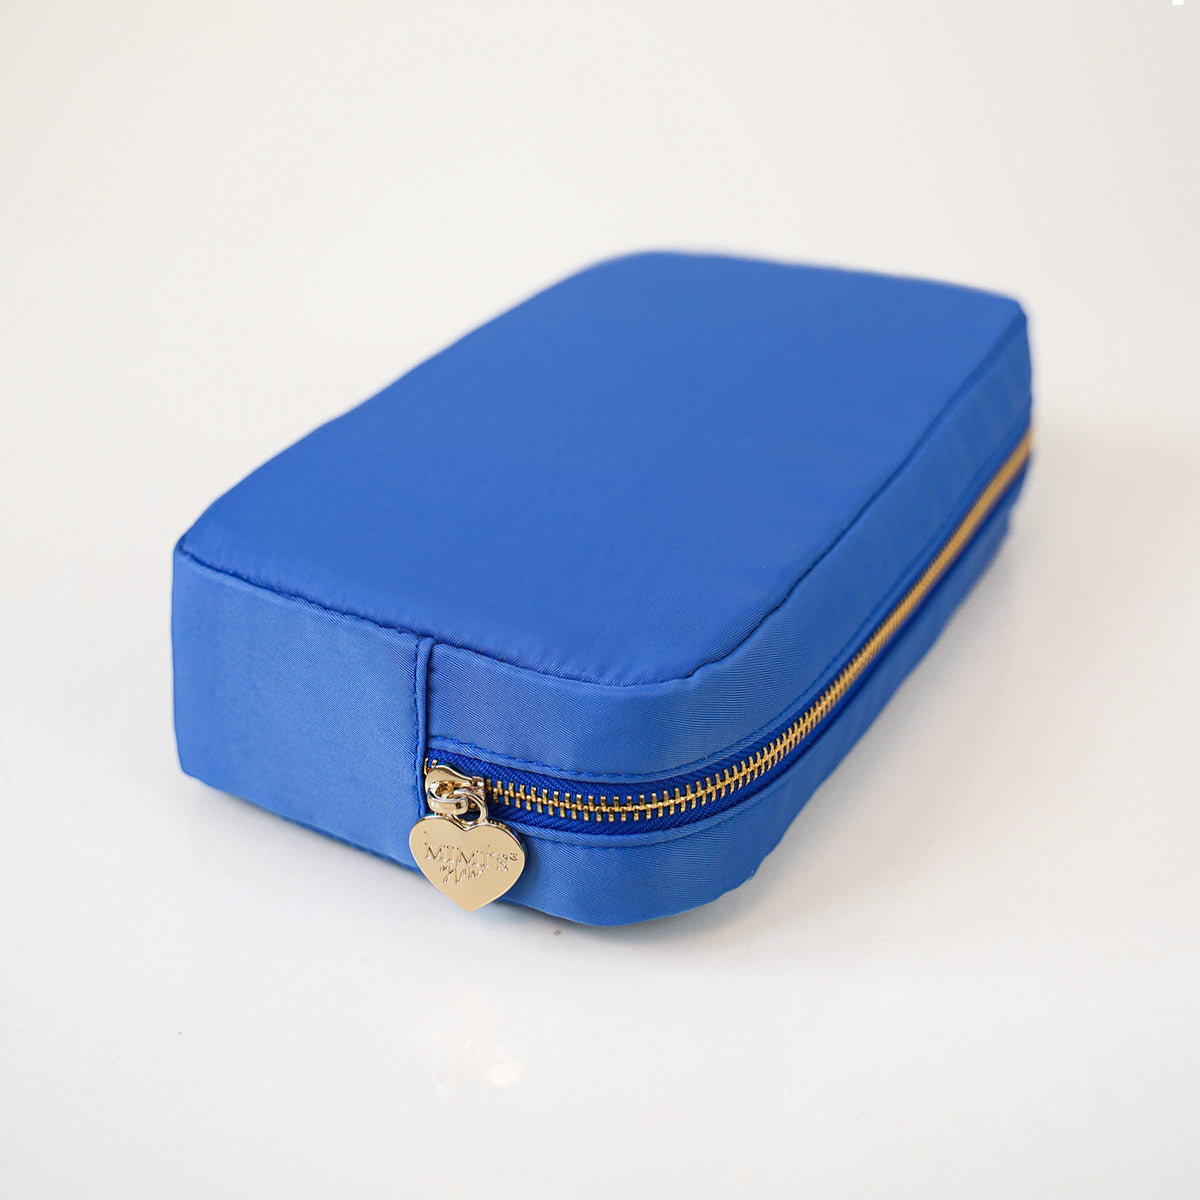 Taschen-Set Nr. 3 Royal Blau (2 Taschen)